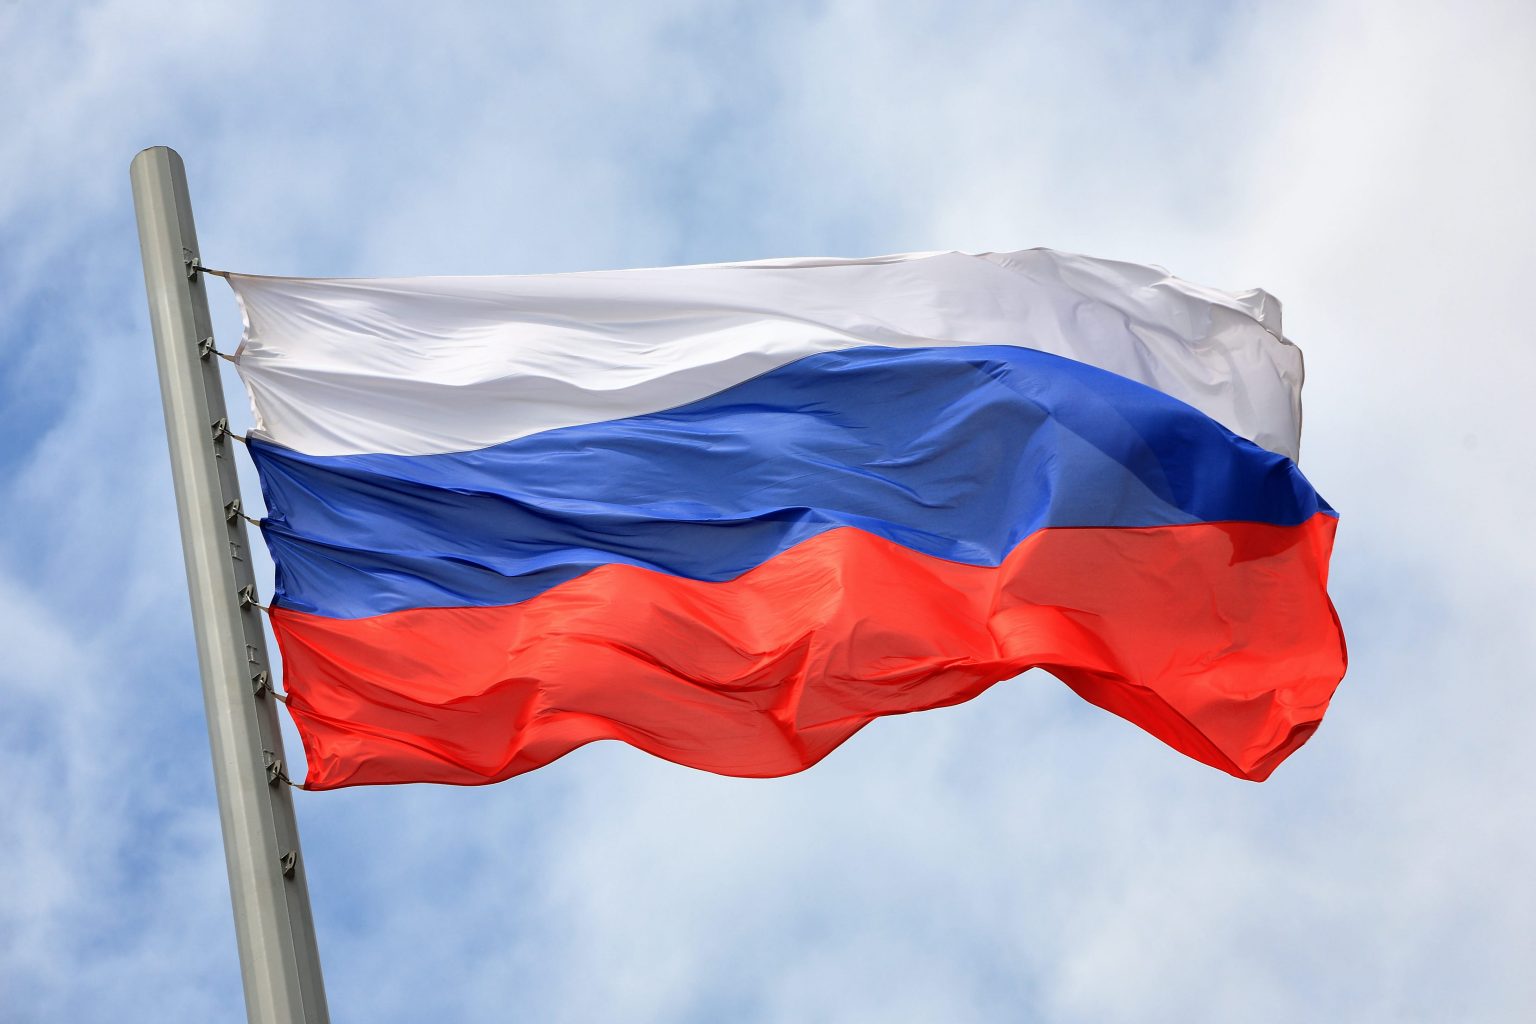 Муниципалитеты в 100 раз увеличили расходы на покупку российских флагов и гербов